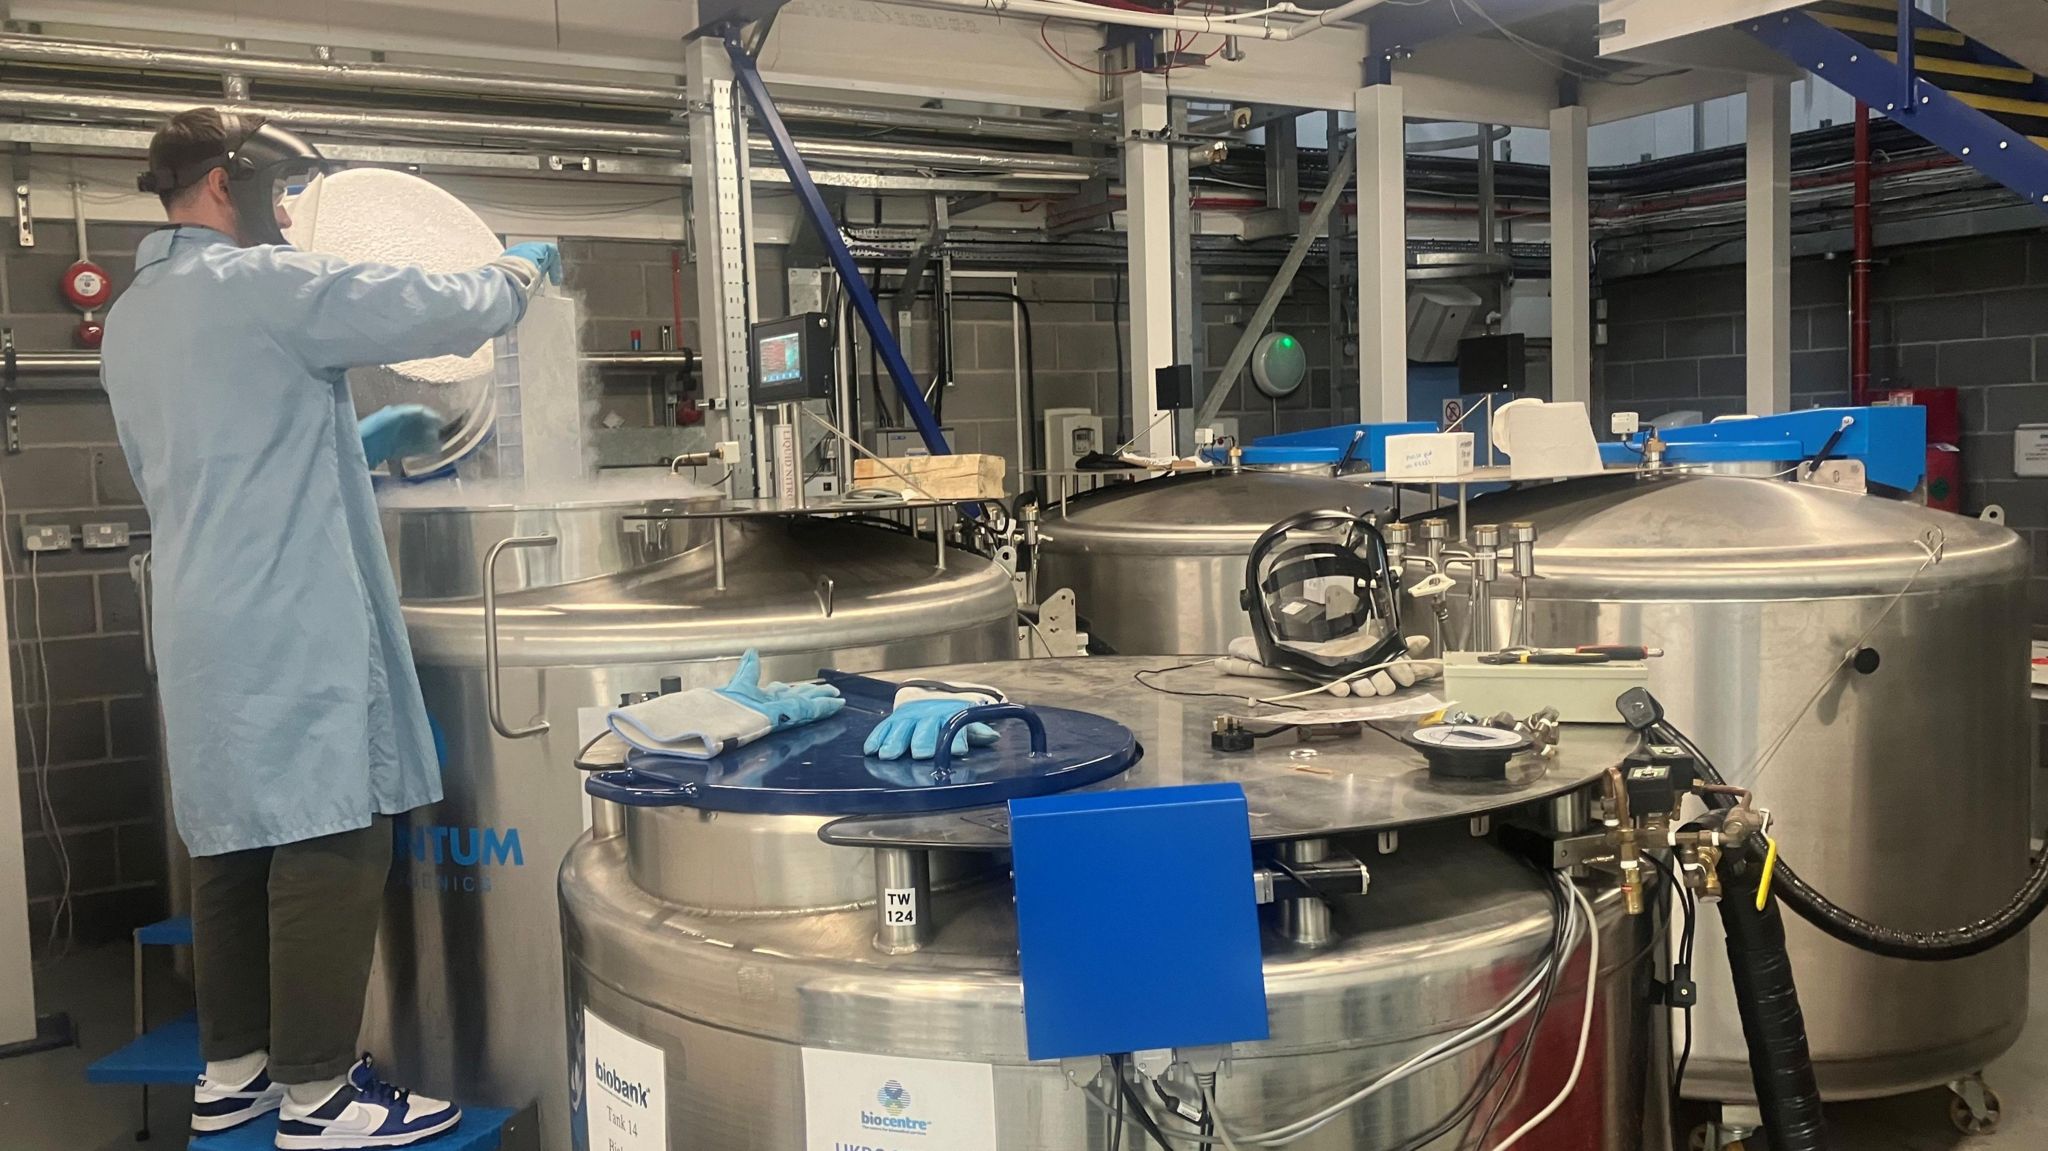 Picture of liquid nitrogen in a laboratory